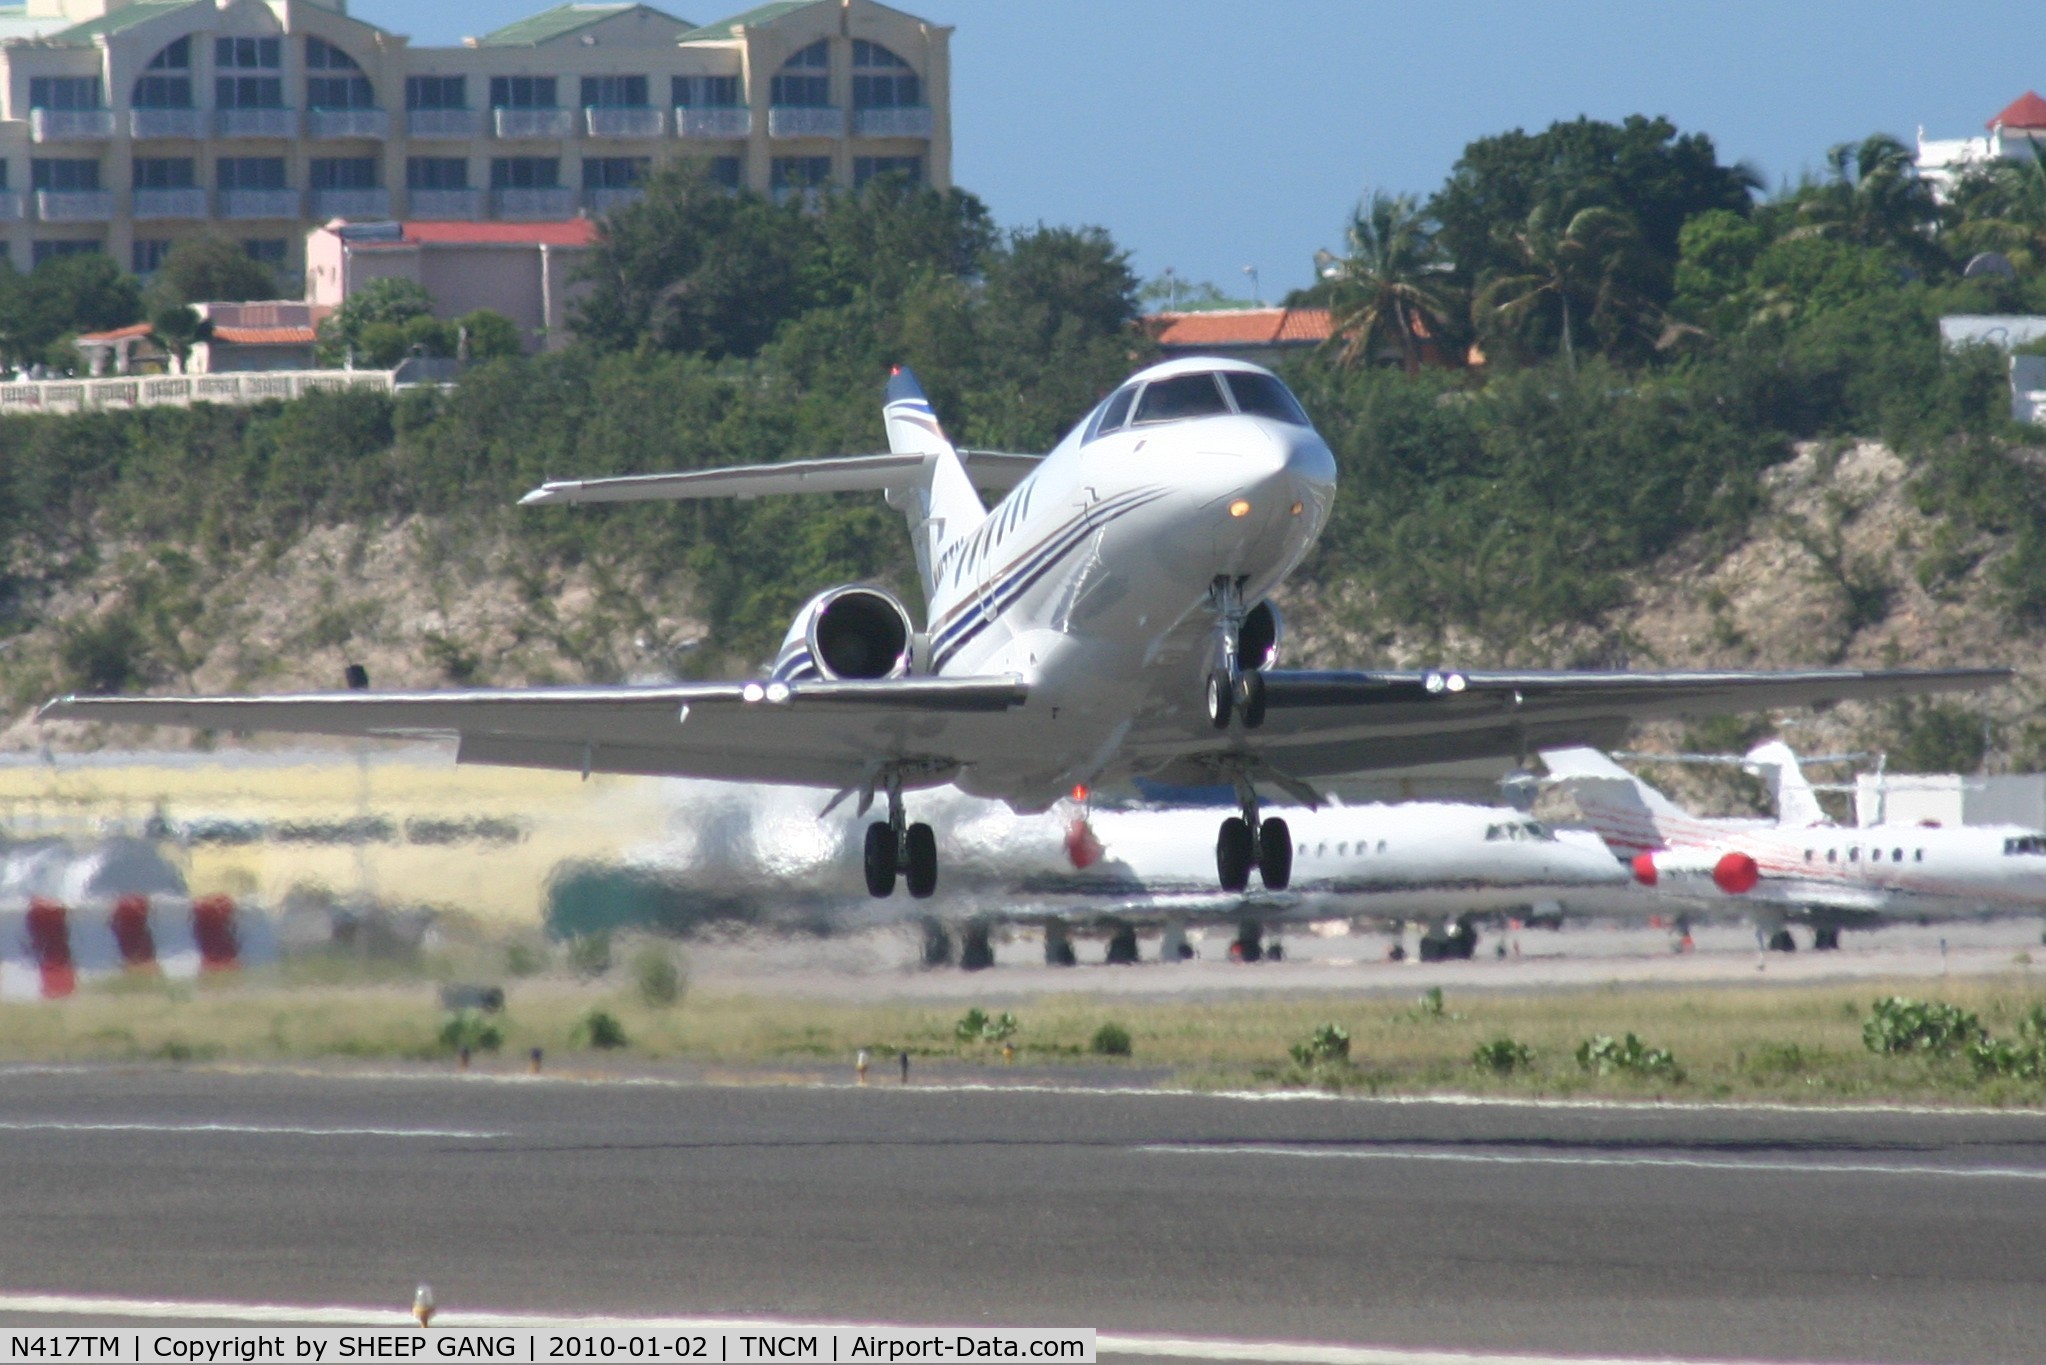 N417TM, 2004 Raytheon Hawker 800XP C/N 258657, N417TM departing TNCM runway 10